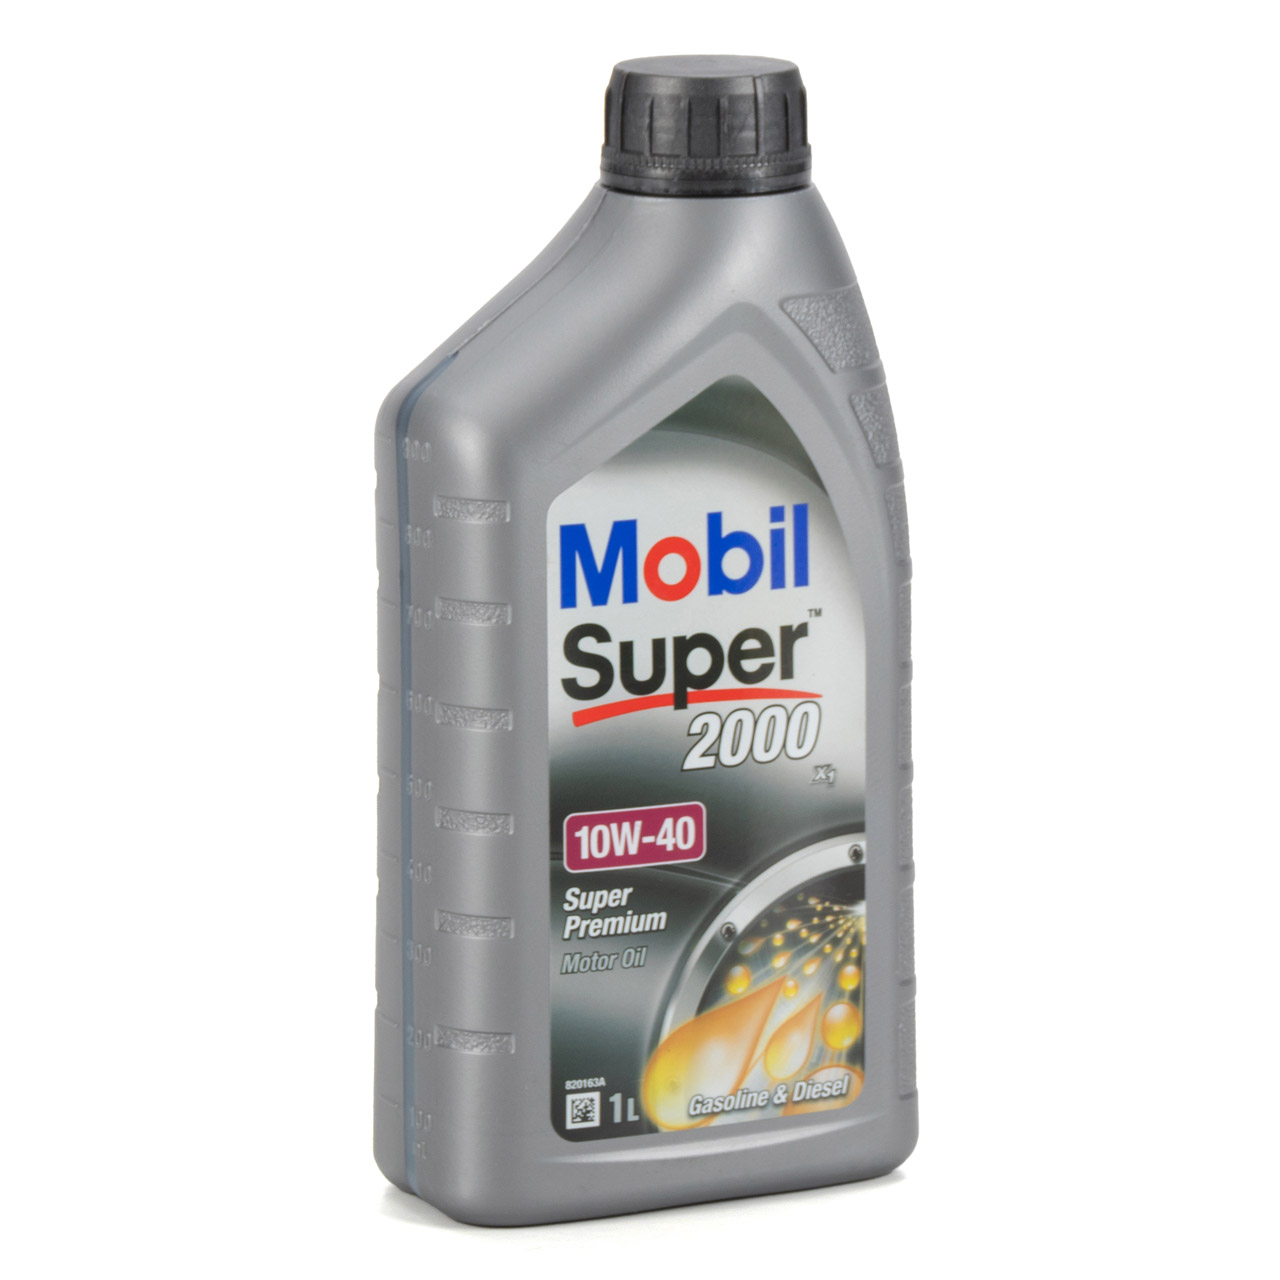 Mobil SUPER 2000 X1 10W40 Super Premium Motoröl Öl VW 501.01/505.00 - 1L 1 Liter